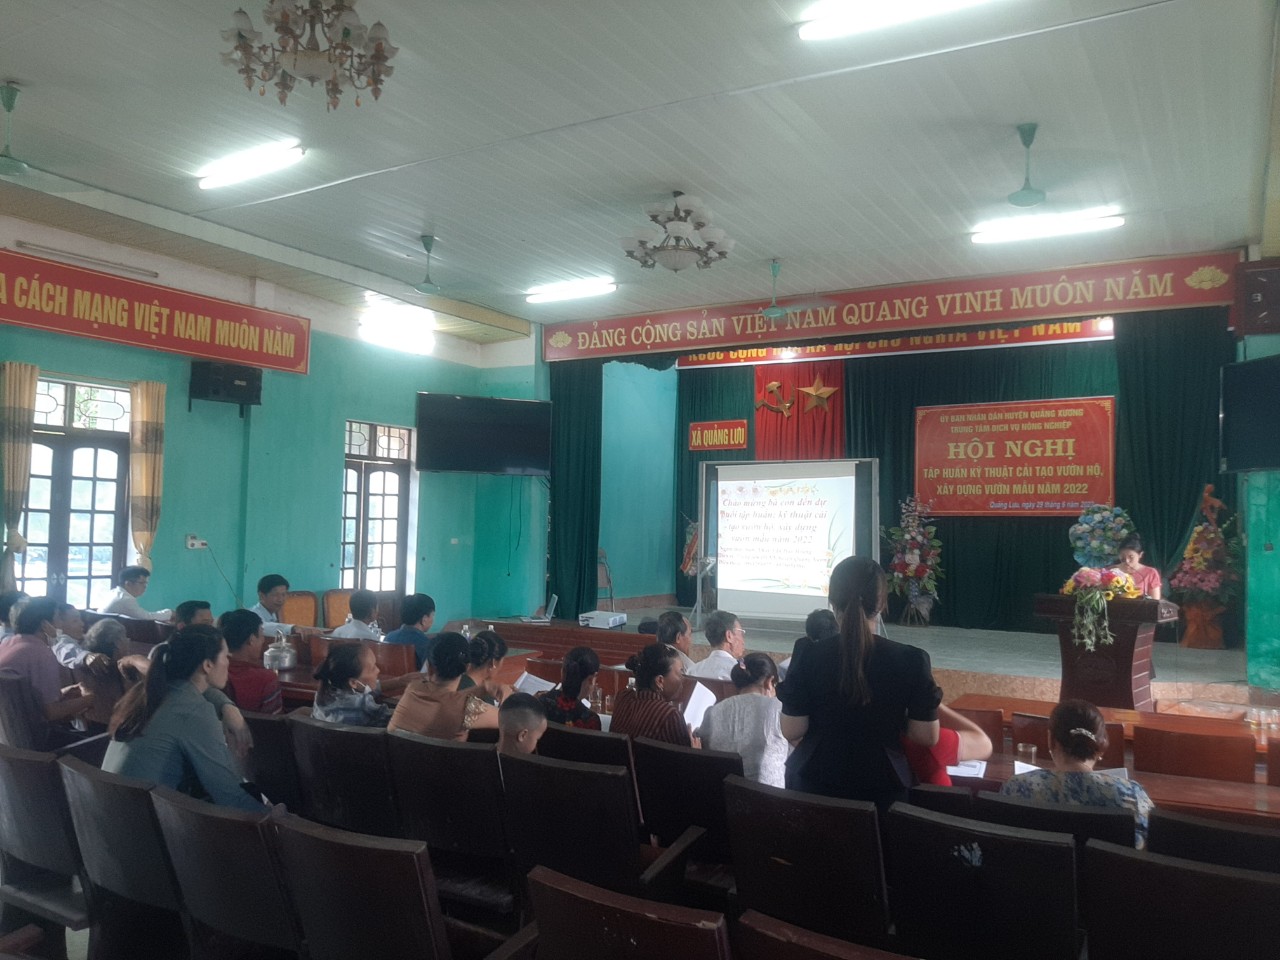  Hội nông dân, Hội liên hiệp phụ nữ xã Quảng Lưu phối hợp với phòng nông nghiệp huyện mở lớp tập huấn kỷ thuật cải tạo vườn hộ, xây dựng vườn mẫu năm 2022